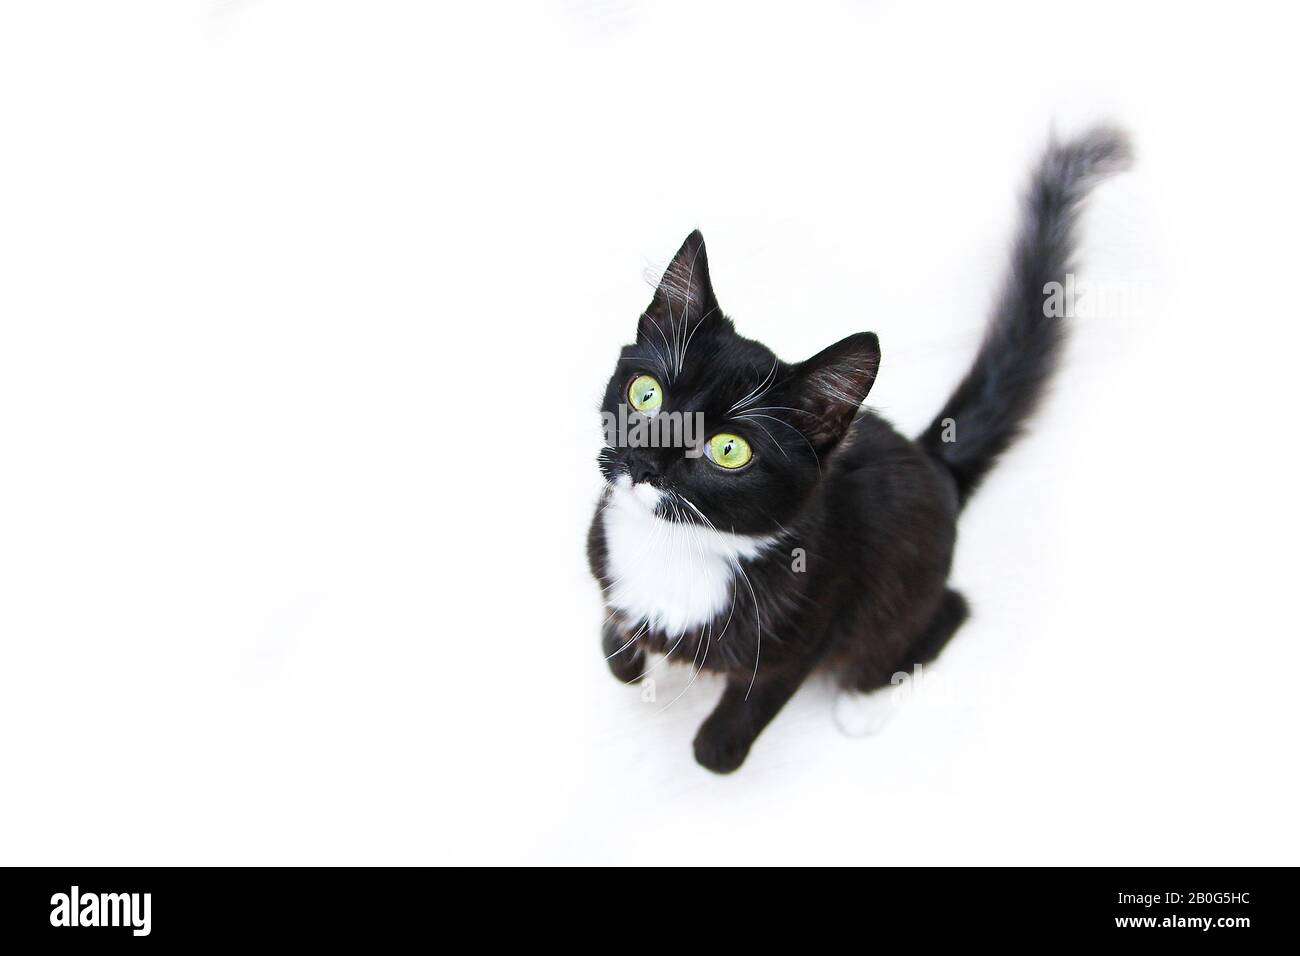 Die süße schwarze Katze mit grünen Augen, die auf einem weißen Hinterrund sitzt und neugierig aufblickt. Süß und glücklich aussehen. Stockfoto